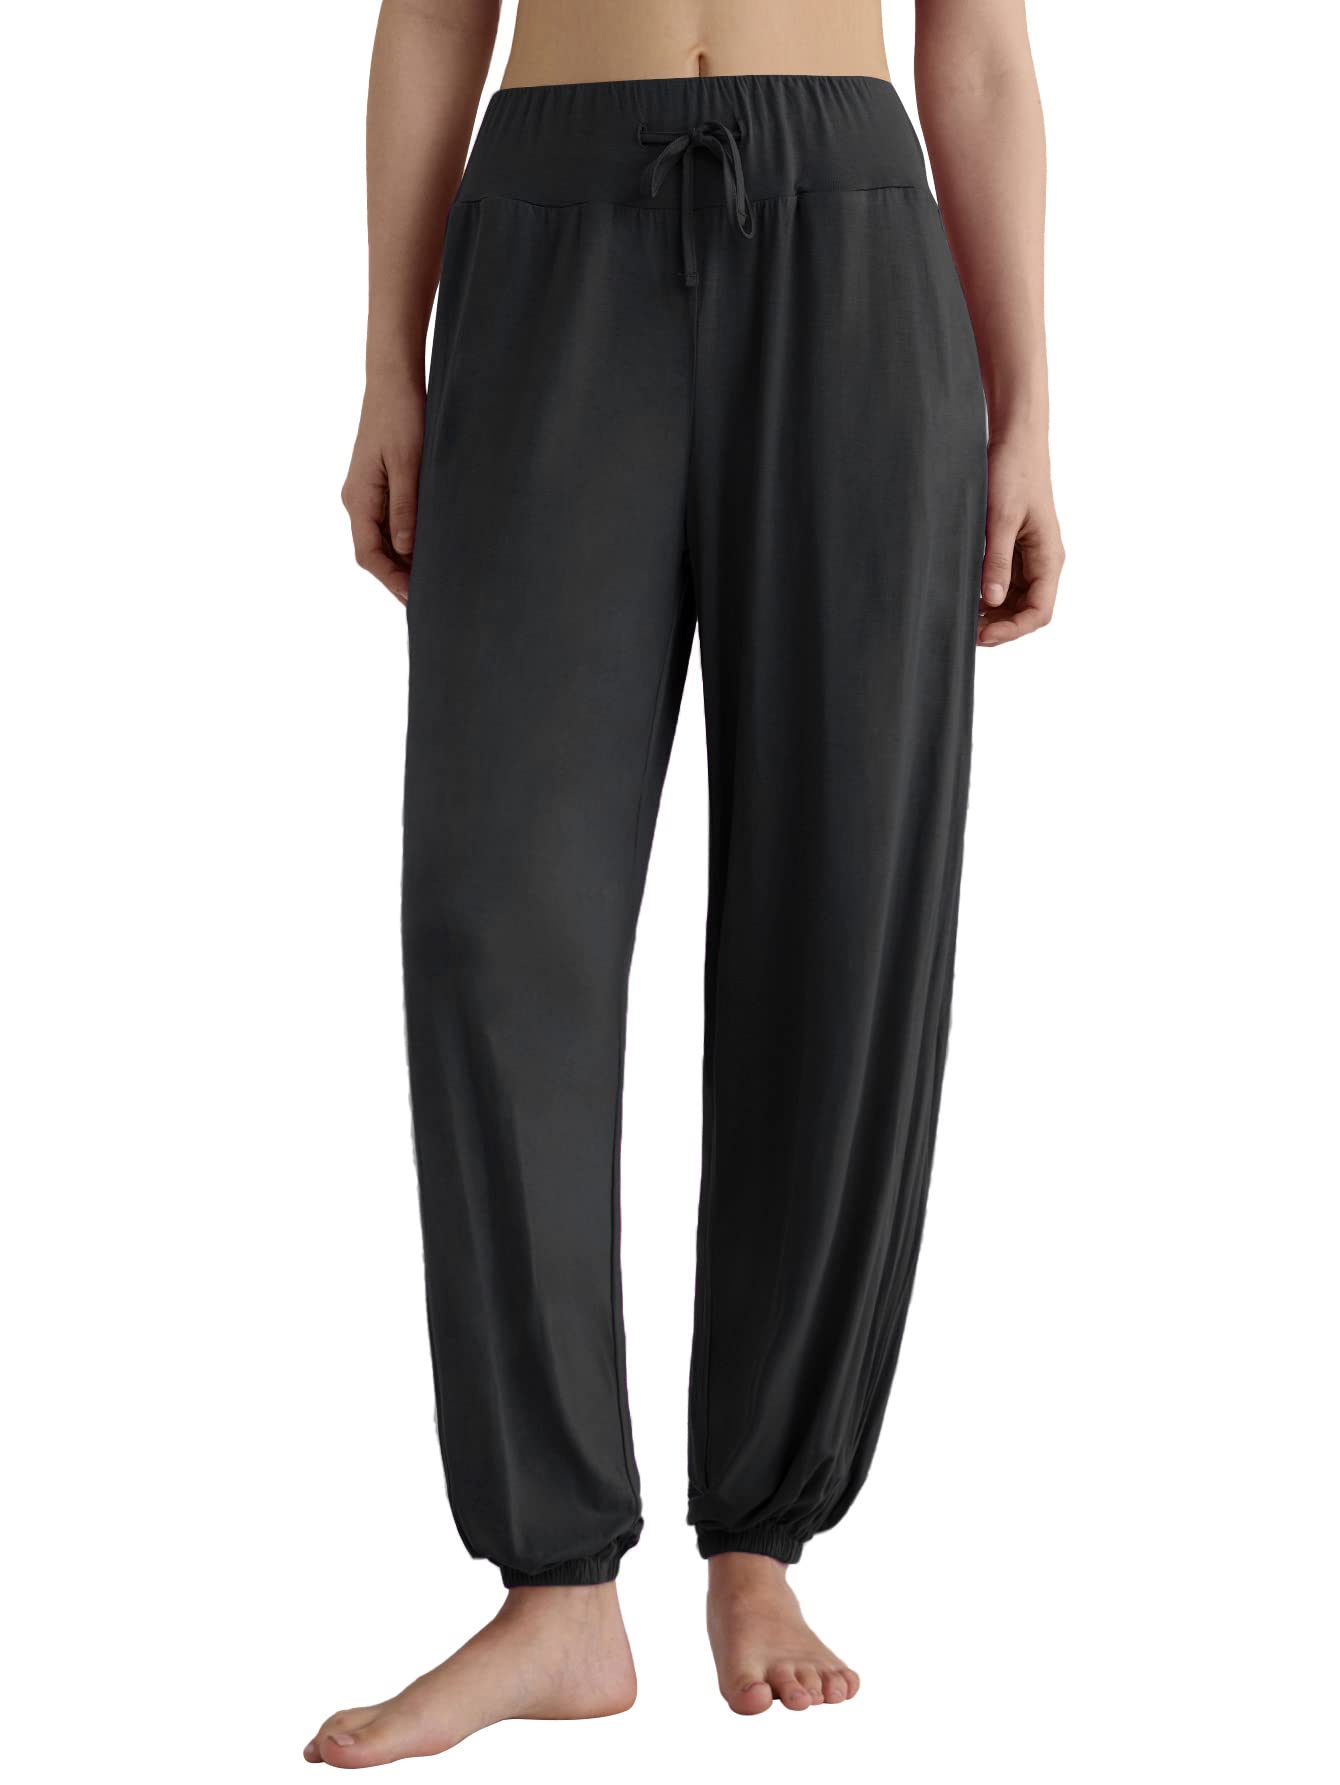  Latuza Women's Plus Size Pajama Set Soft Viscose Tops